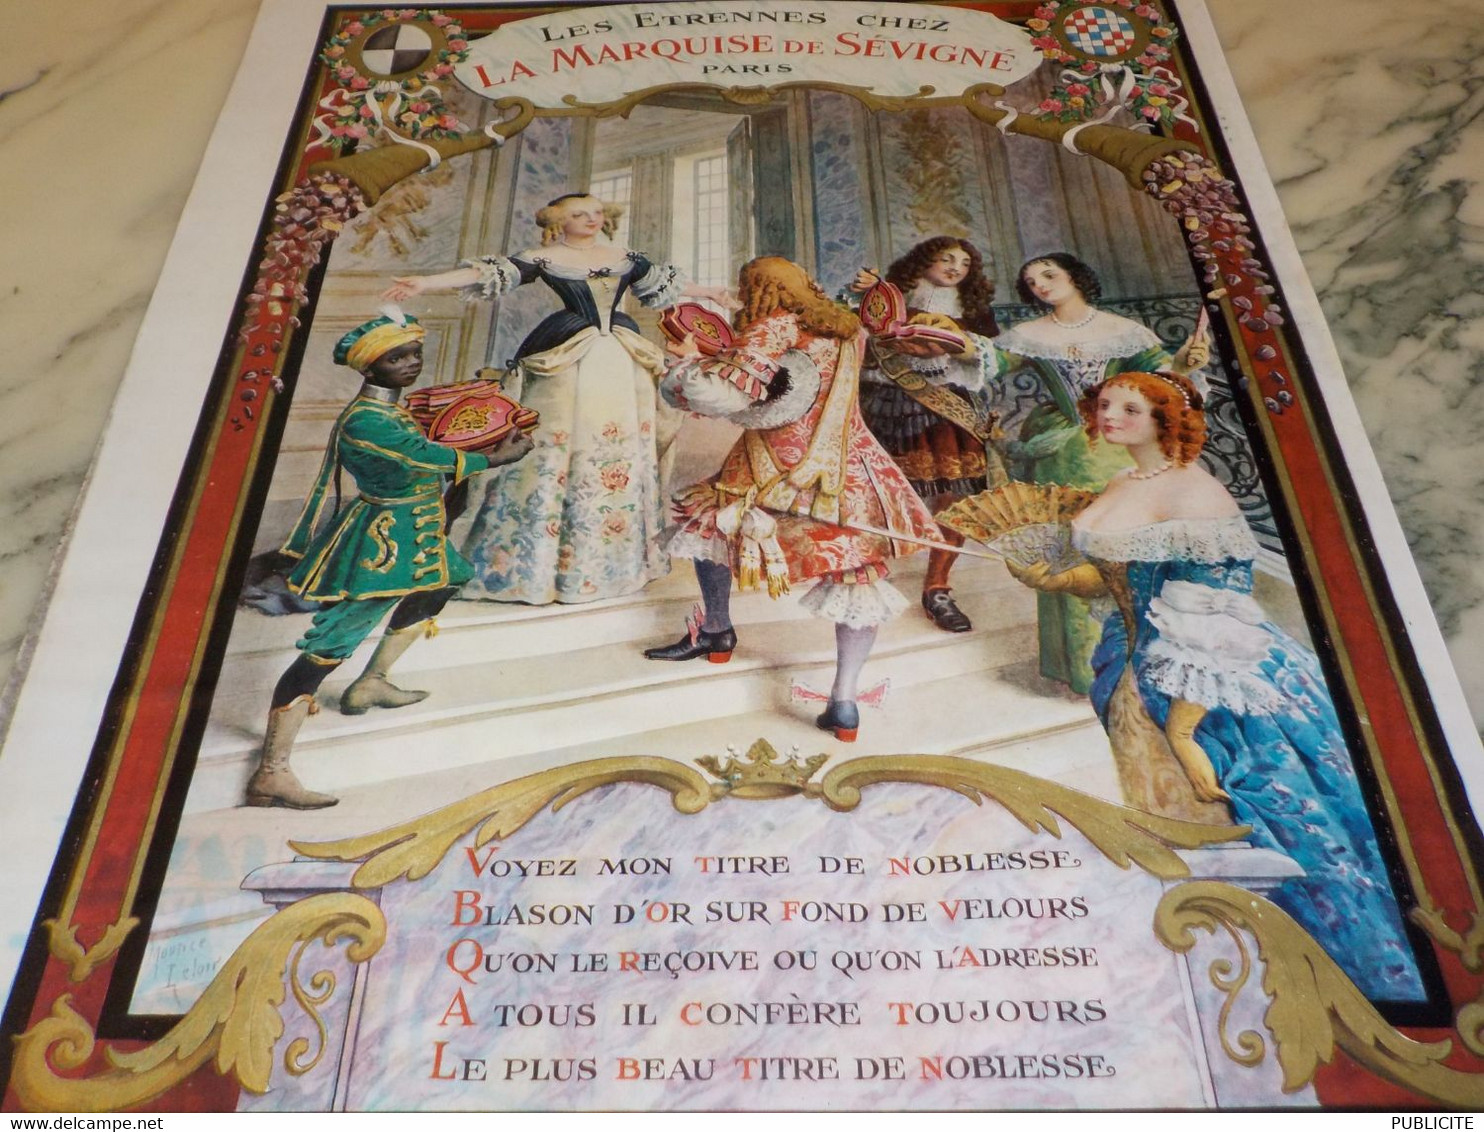 ANCIENNE PUBLICITE LES ETRENNES CHEZ LA MARQUISE DE SEVIGNE 1926 - Posters